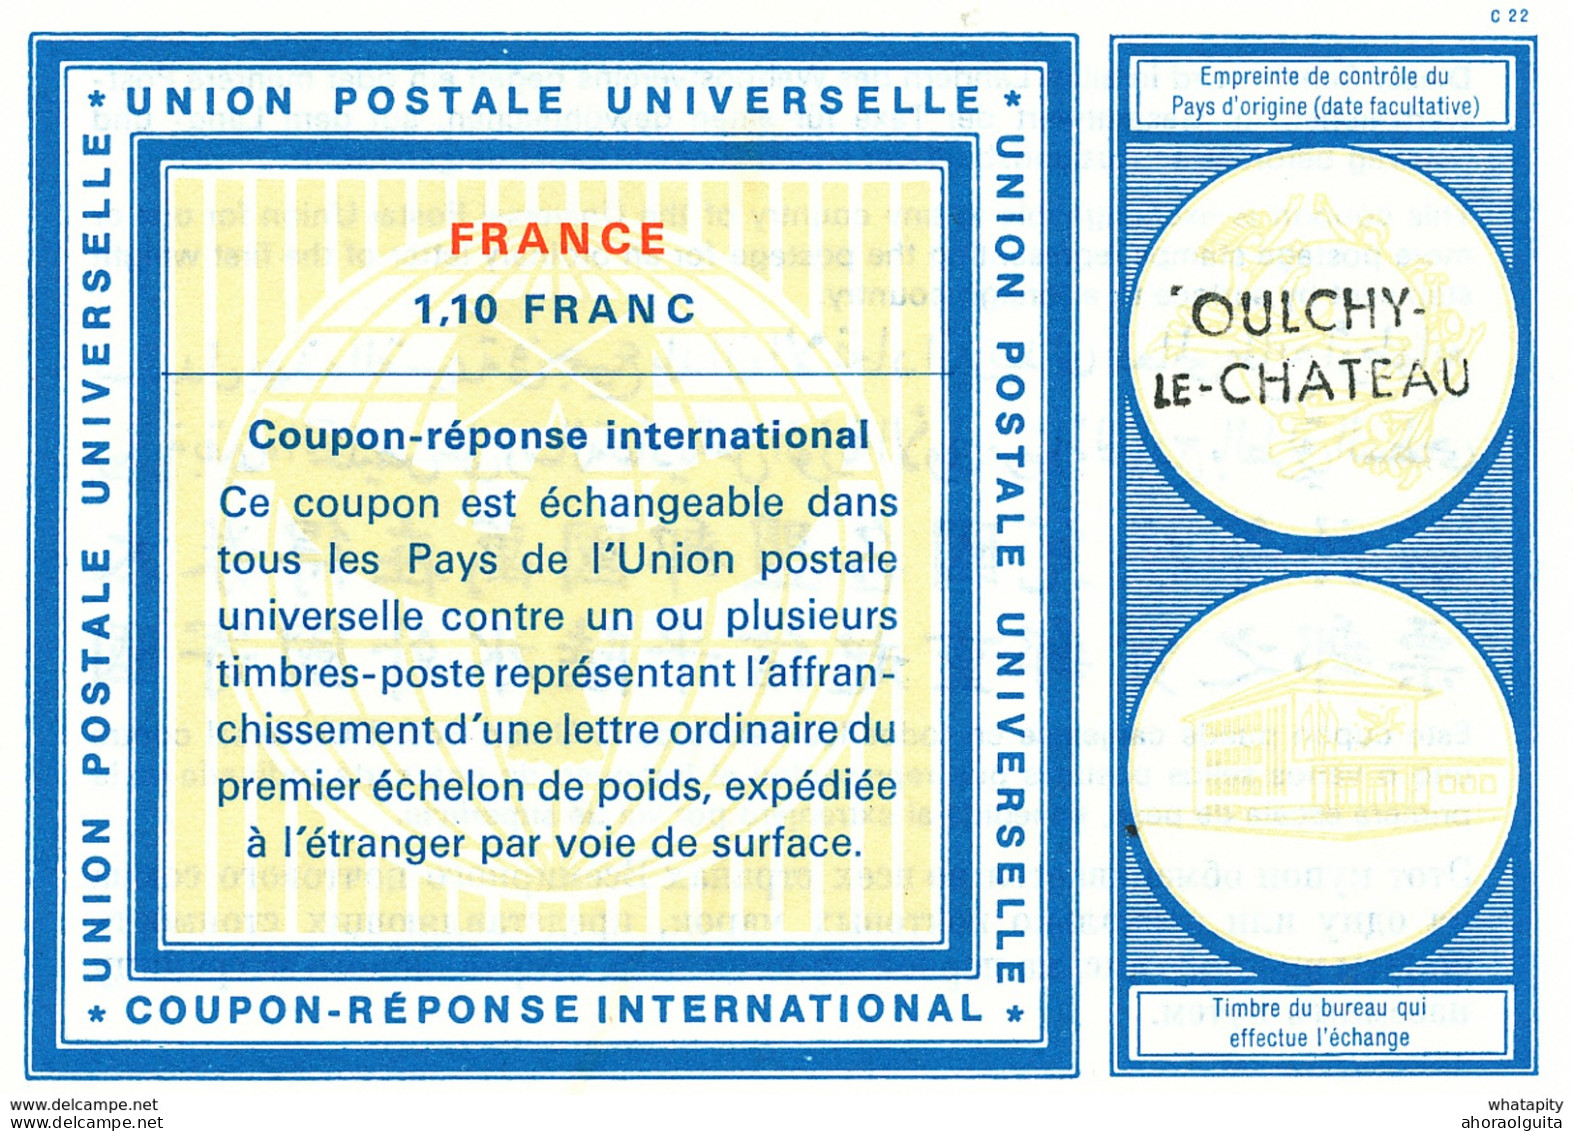 DT 388 -- FRANCE Coupon Réponse International ( IRC) 1.10 Francs  - Griffe OULCHY LE CHATEAU - Cupón-respuesta